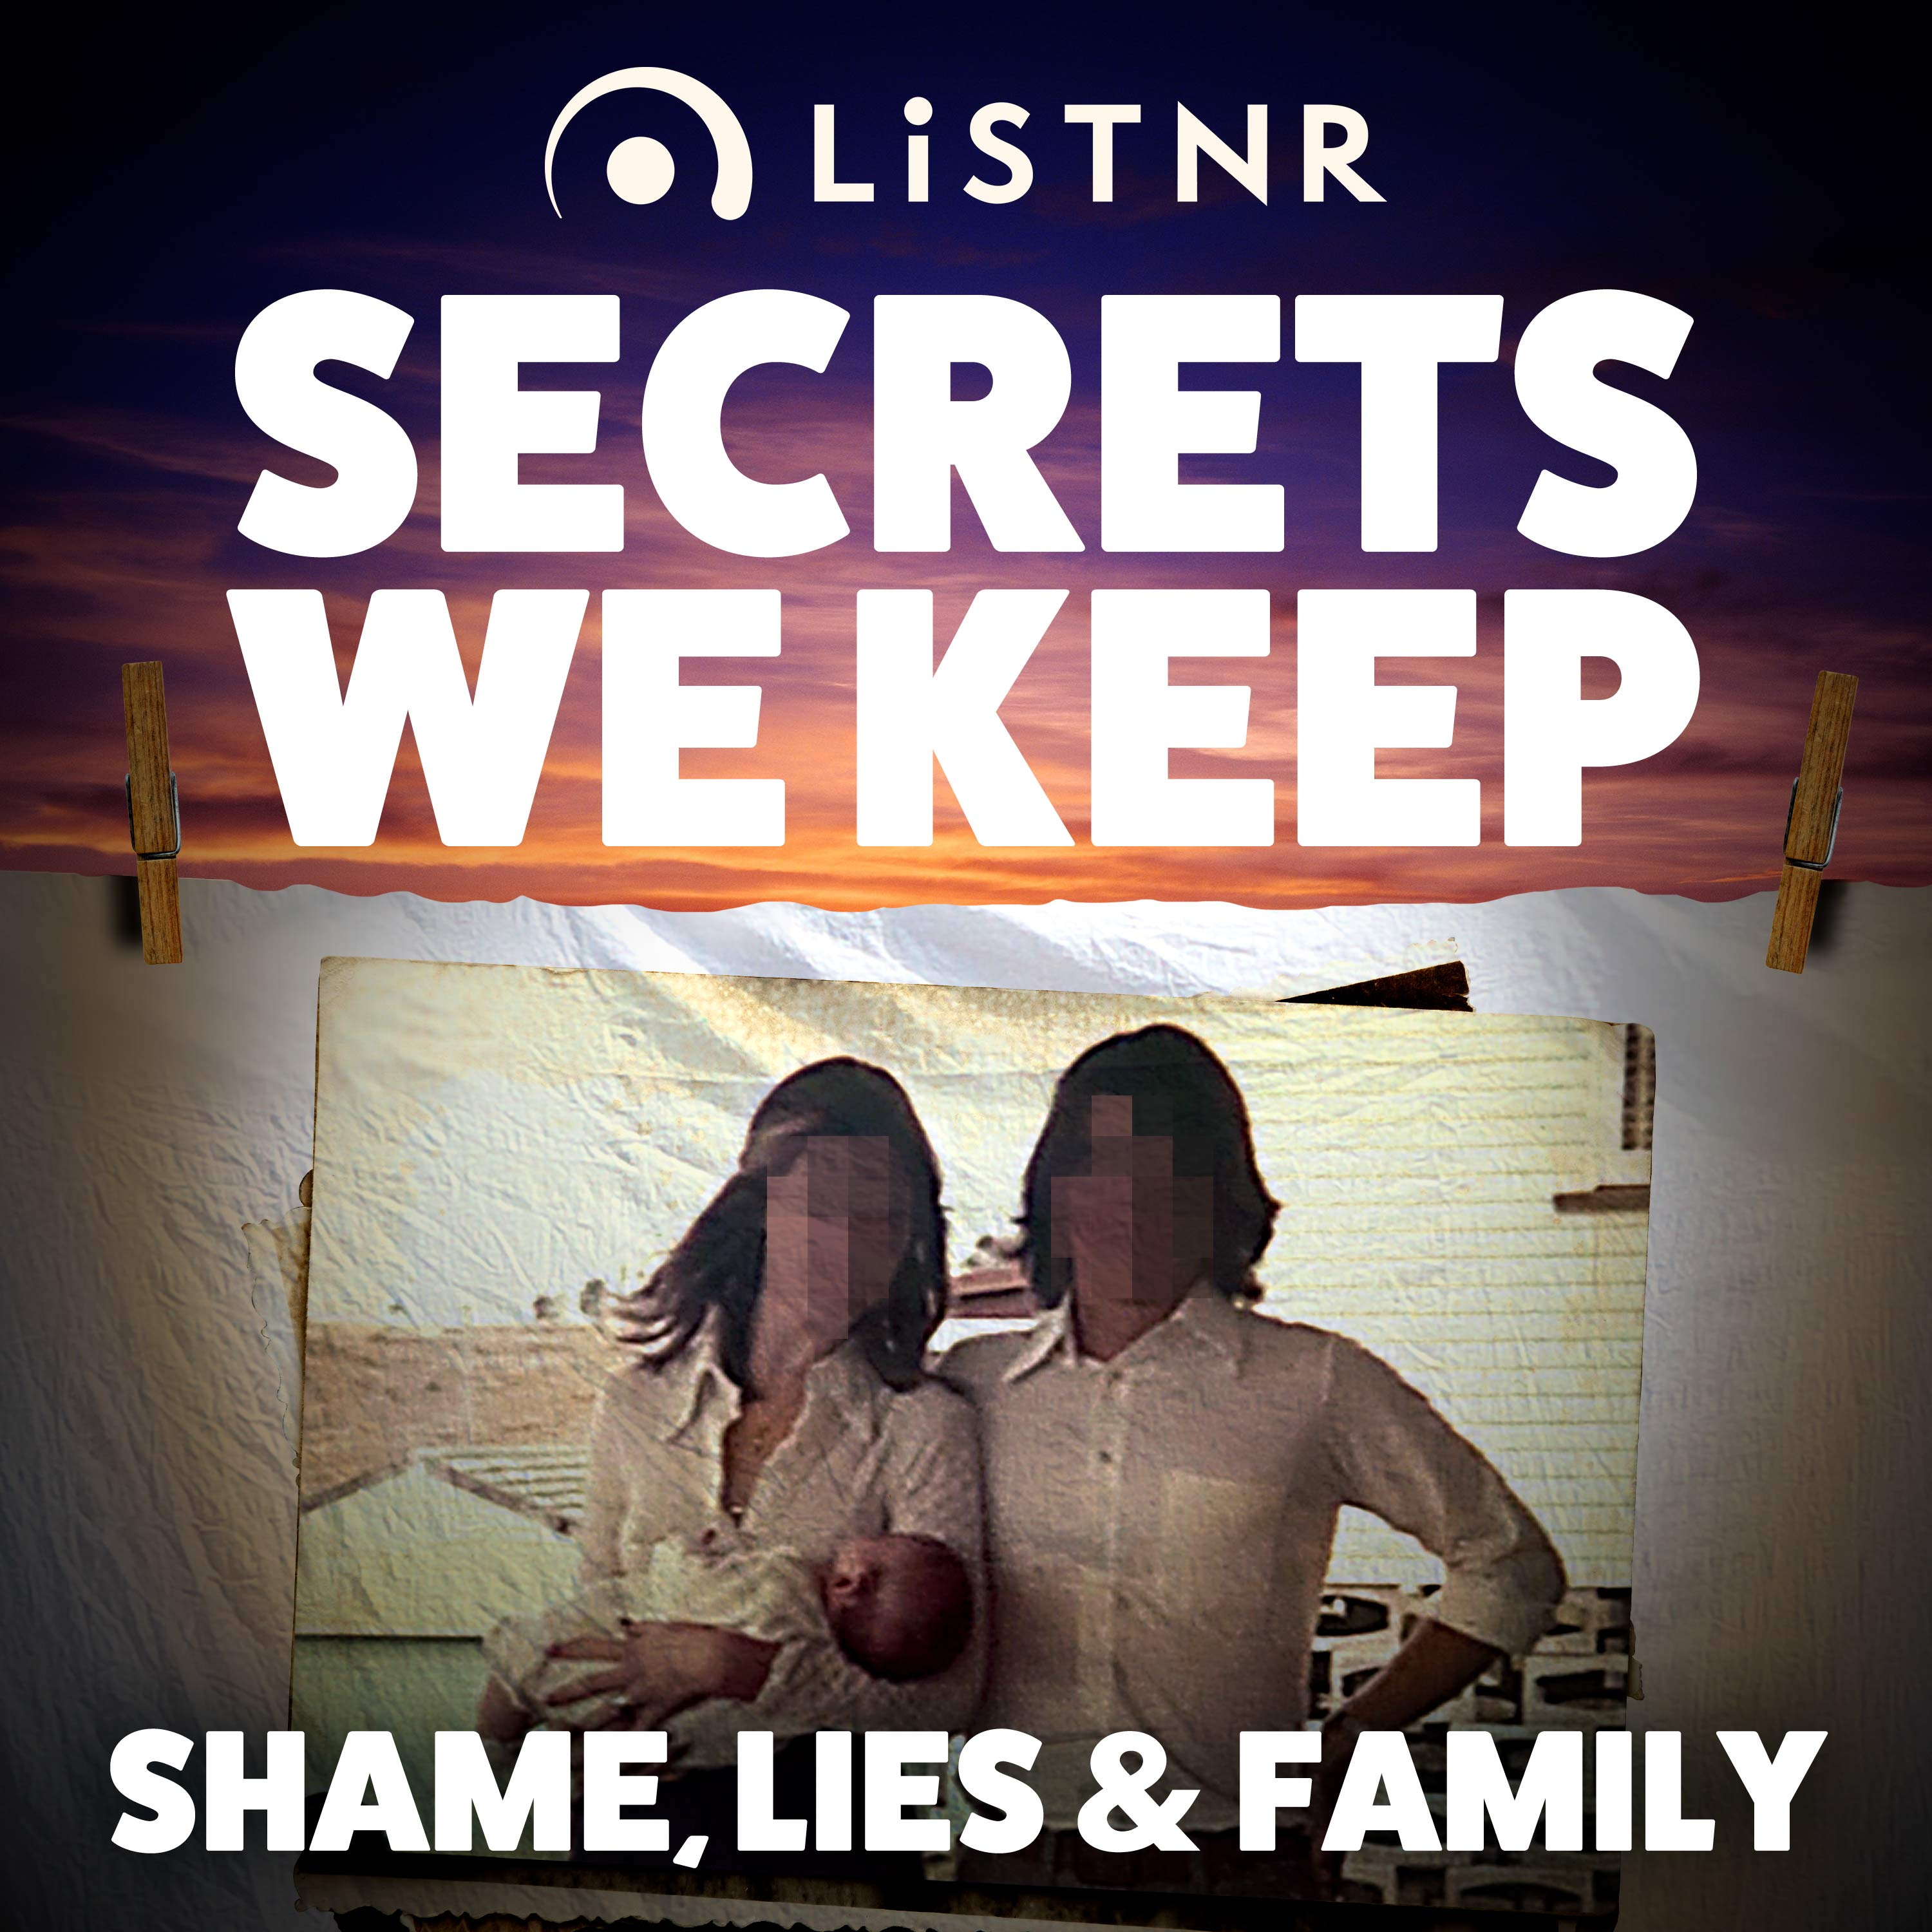 Shame, Lies & Family - The wake